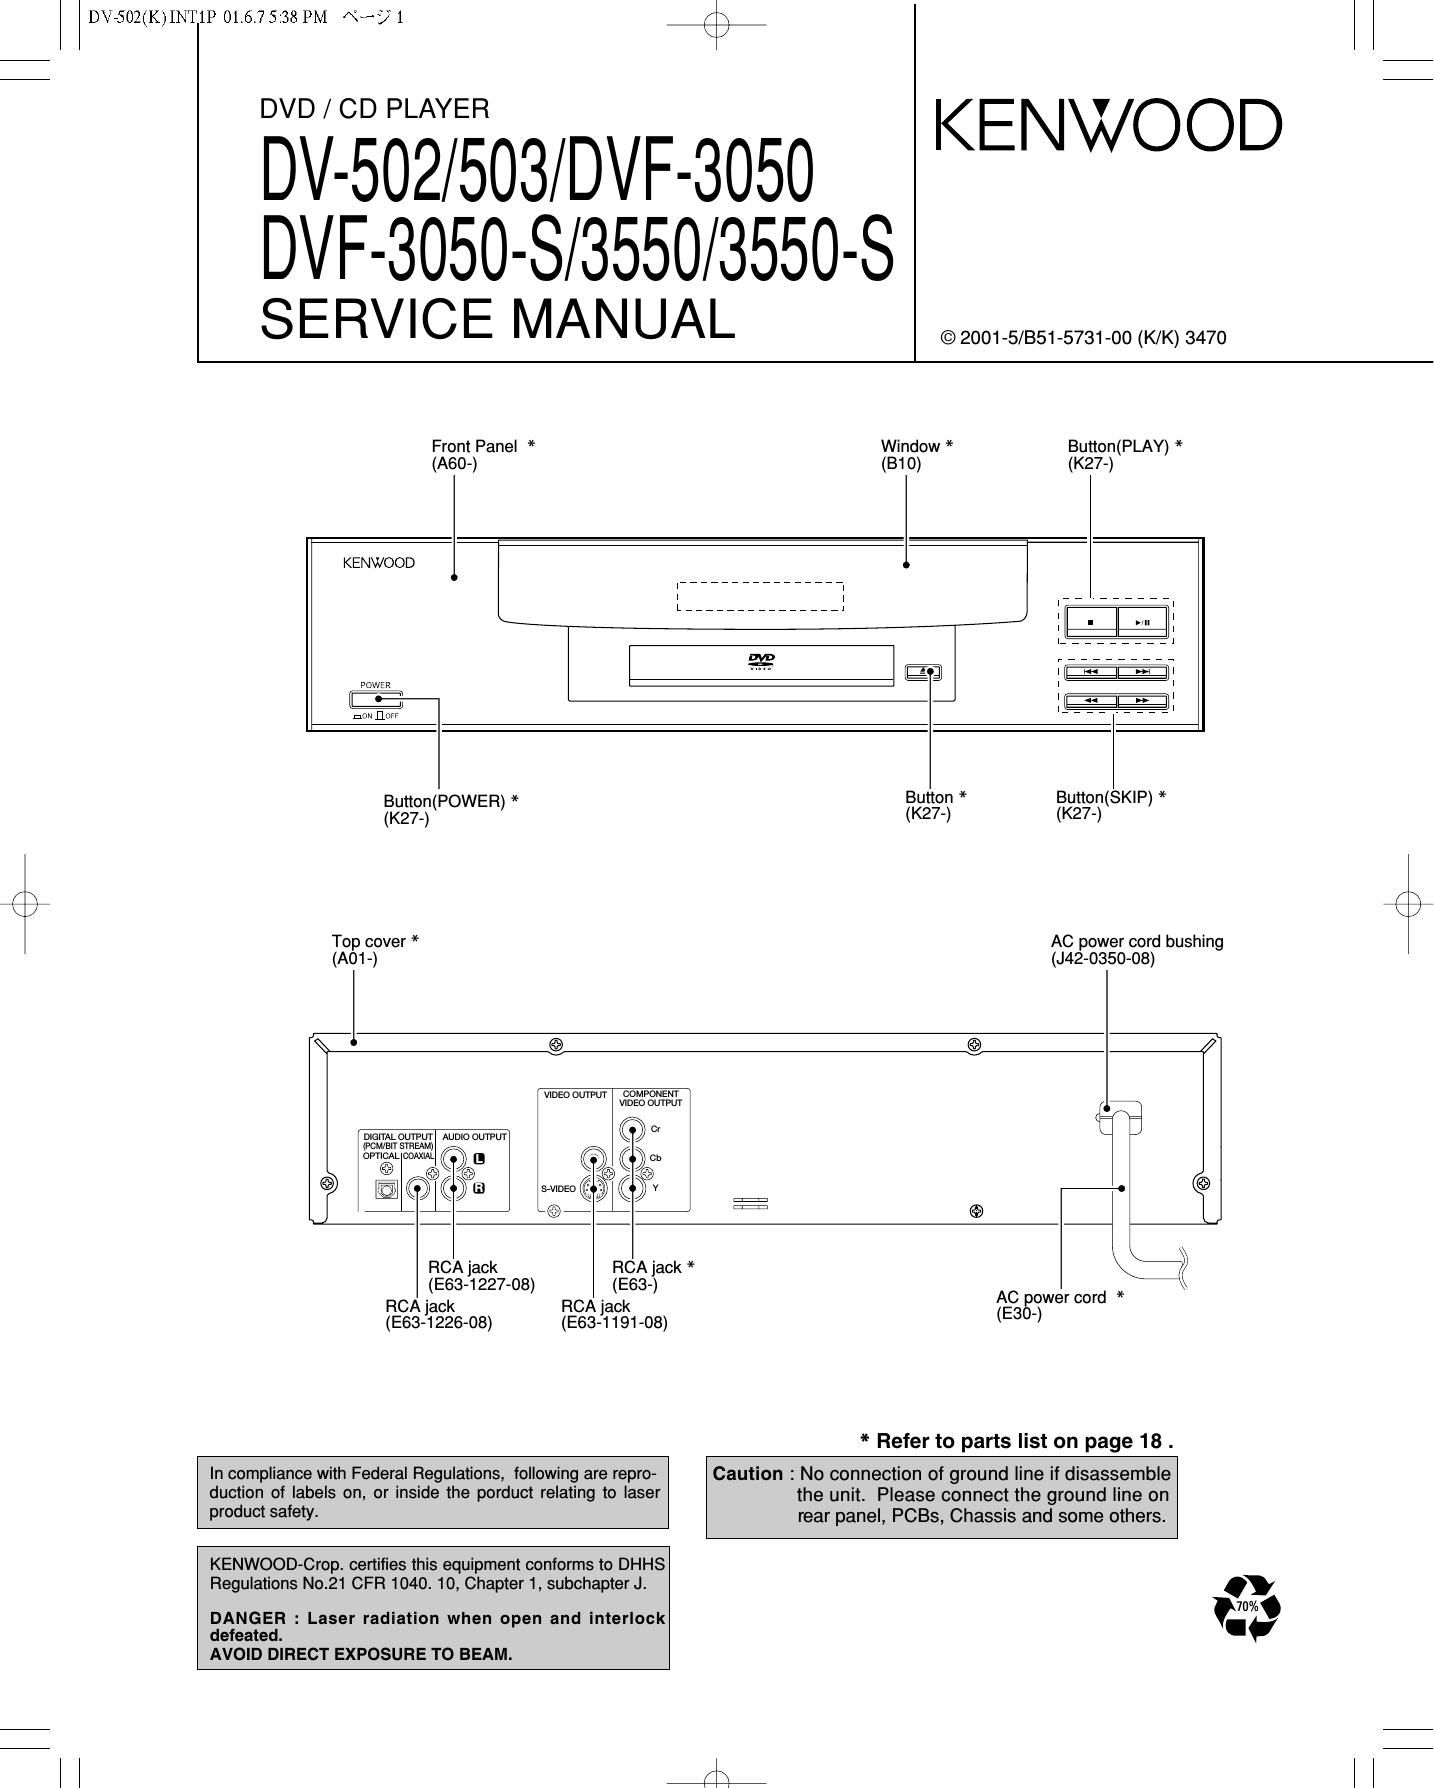 Kenwood DVF 3050 Service Manual